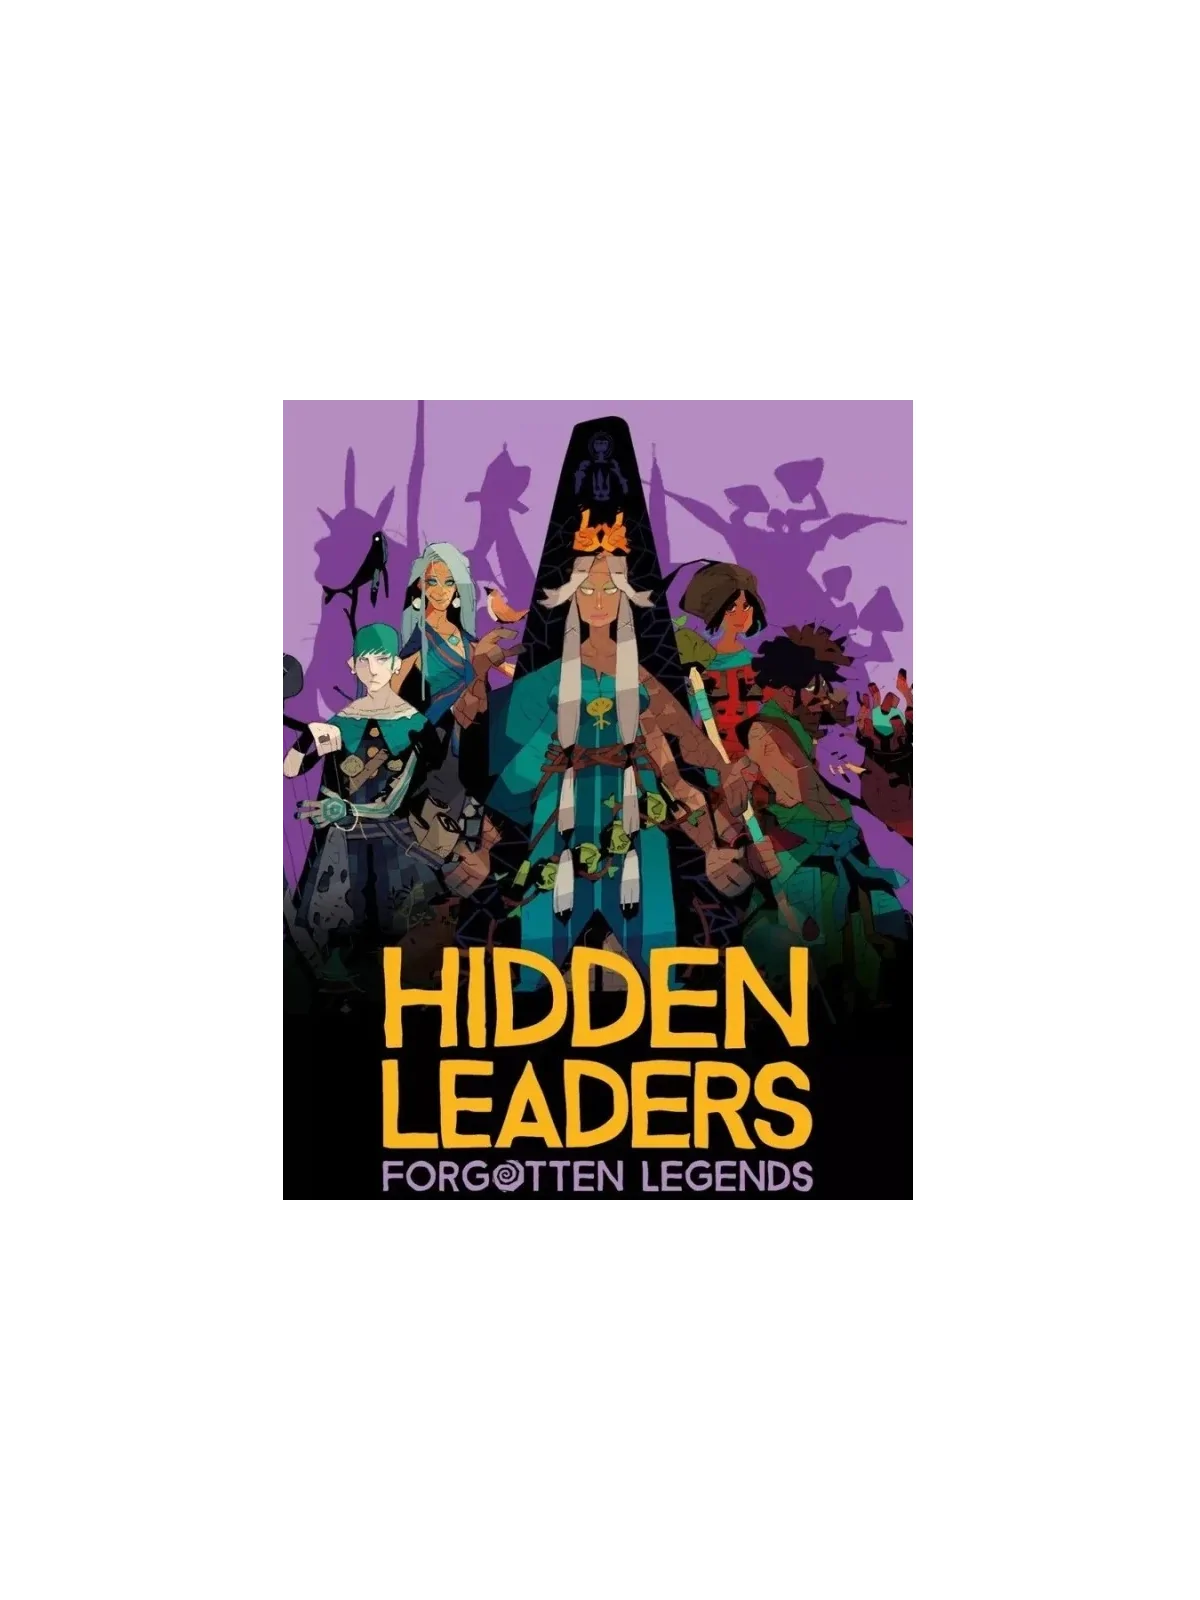 Comprar Hidden Leaders: Forgotten Legends barato al mejor precio 19,79